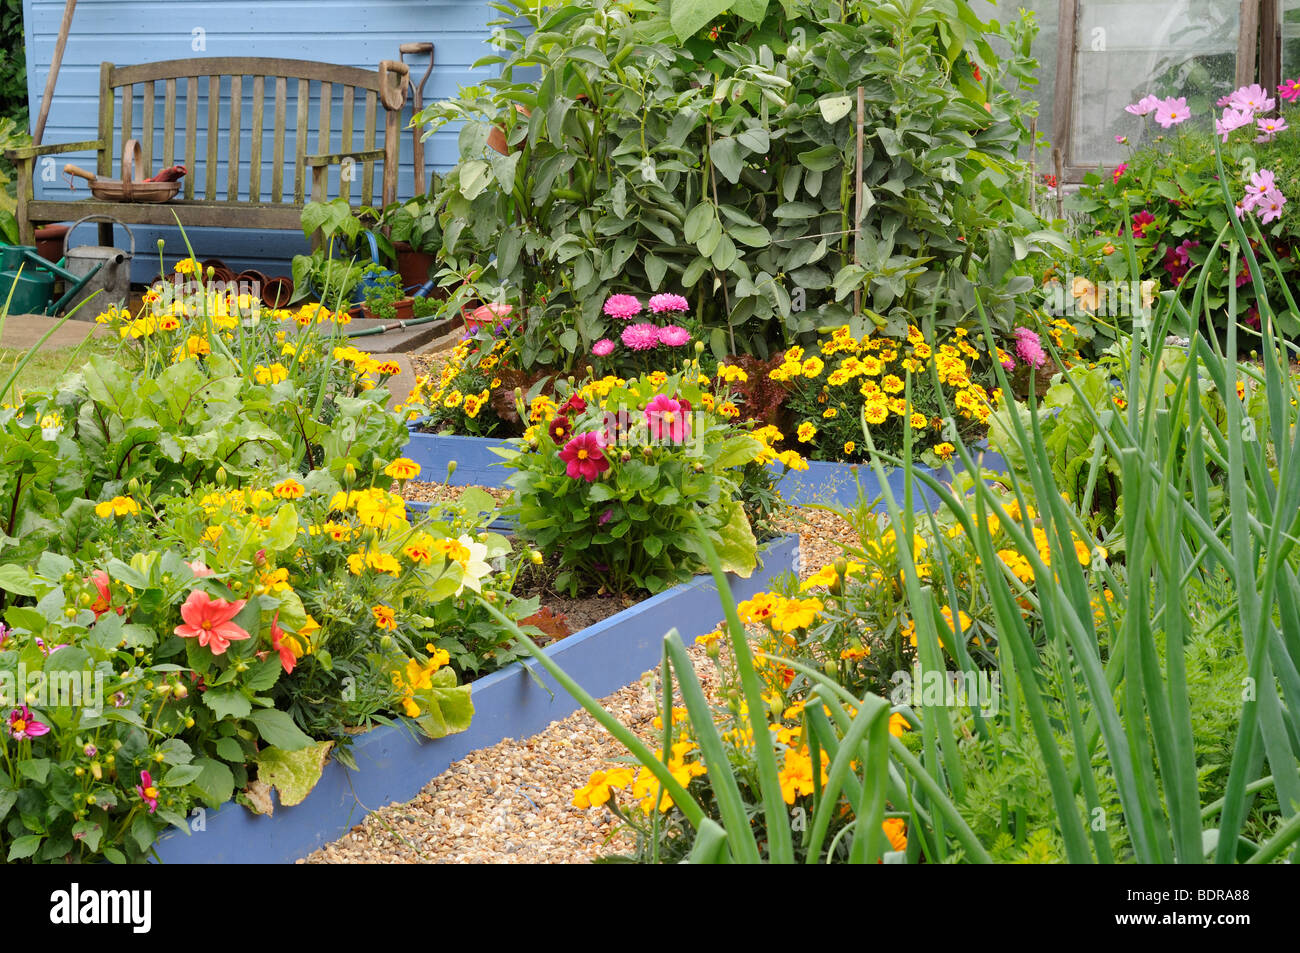 Kleinen Gemüsegarten Garten im Hochsommer mit gemischten Blumen und Gemüse  Pflanzen, UK, Juli Stockfotografie - Alamy